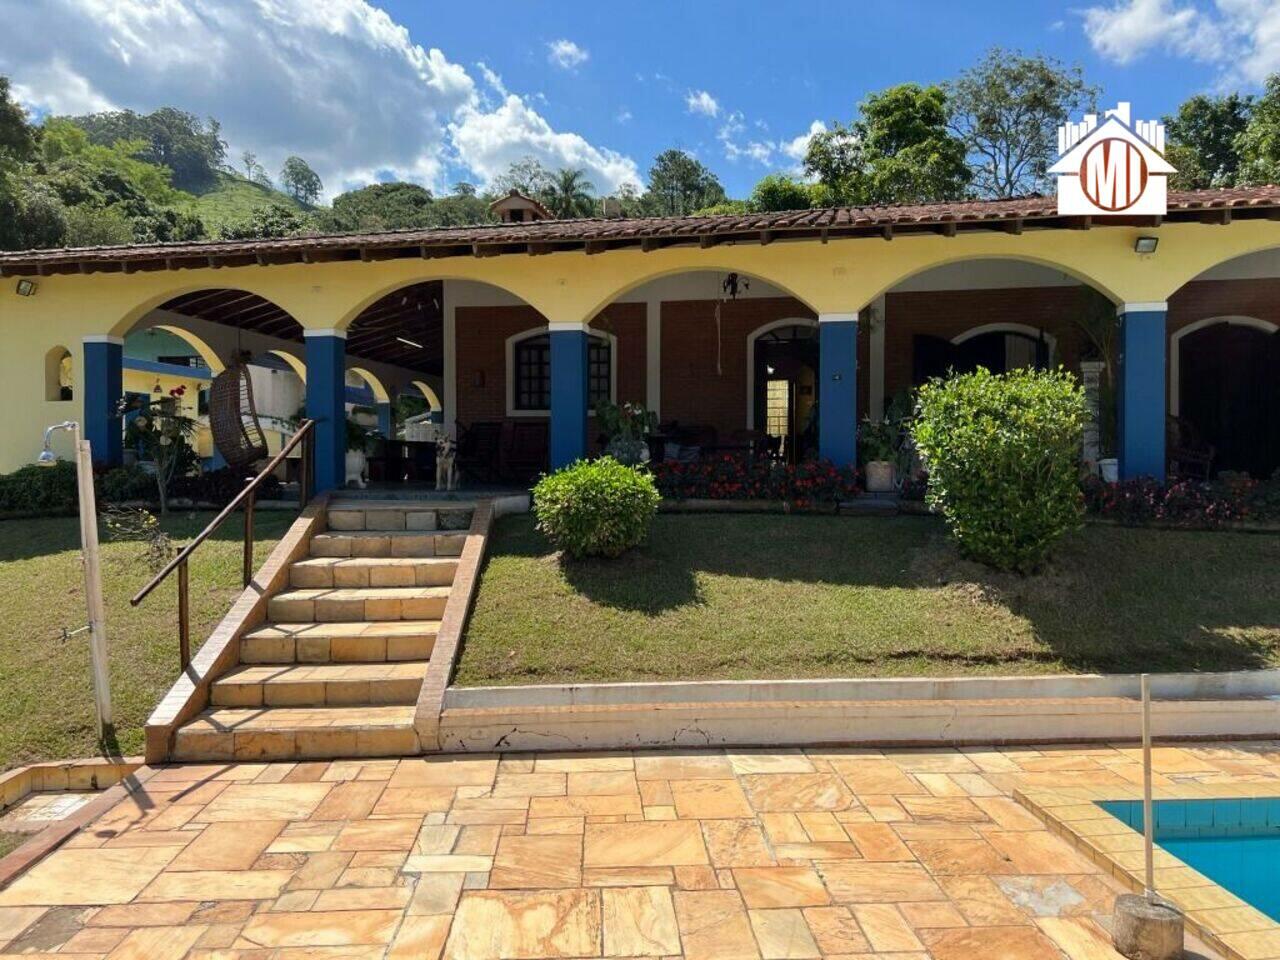 Sítio Bairro Rural, Socorro - SP